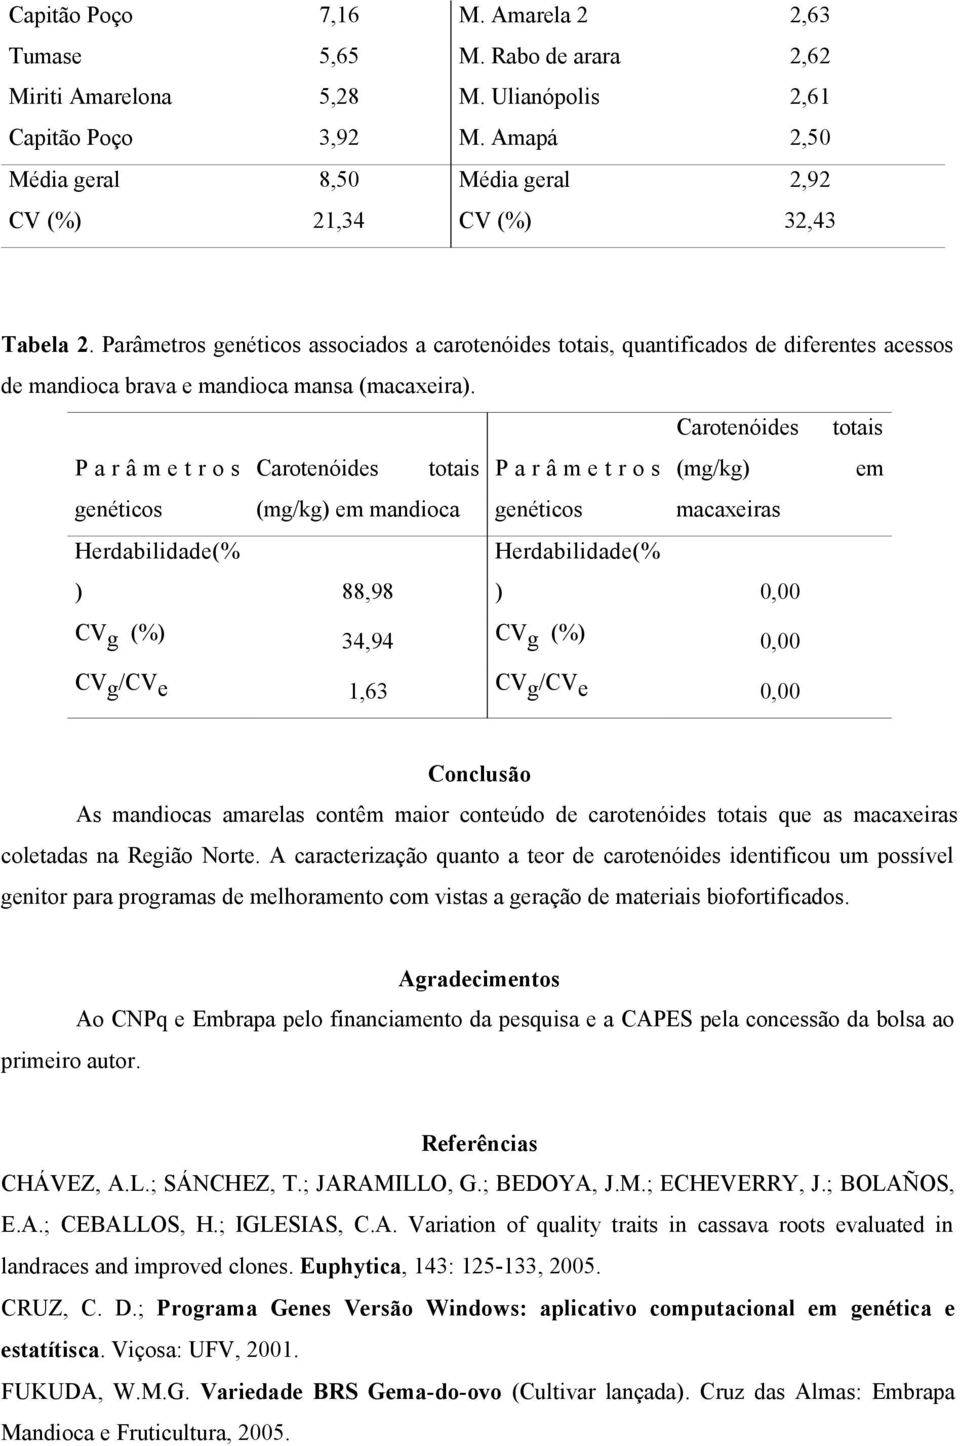 Parâmetros genéticos associados a carotenóides totais, quantificados de diferentes acessos de mandioca brava e mandioca mansa (macaxeira).